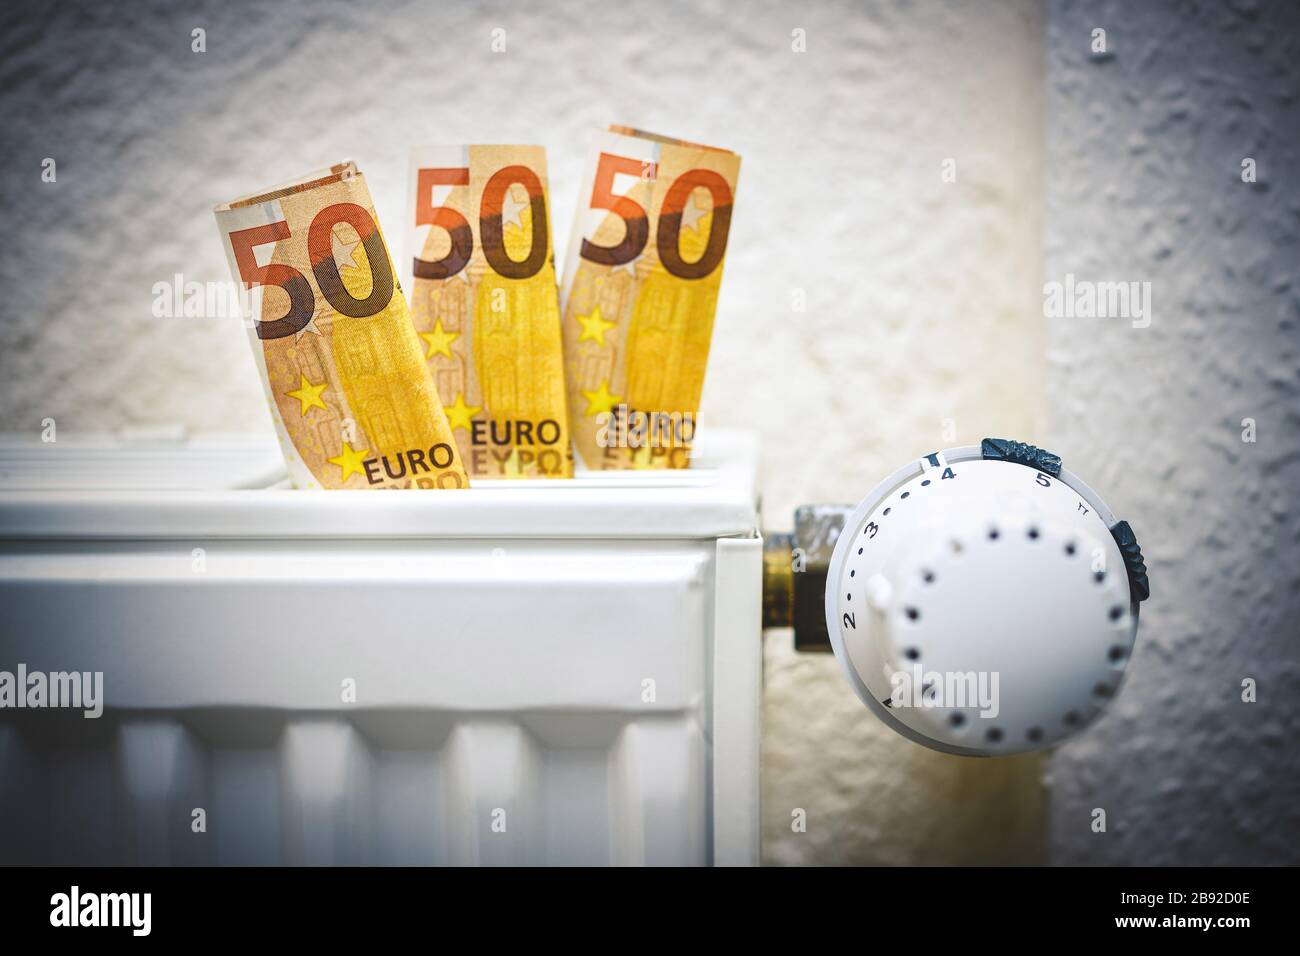 Heating with bank notes, rising heating costs, Heizung mit Geldscheinen, steigende Heizkosten Stock Photo